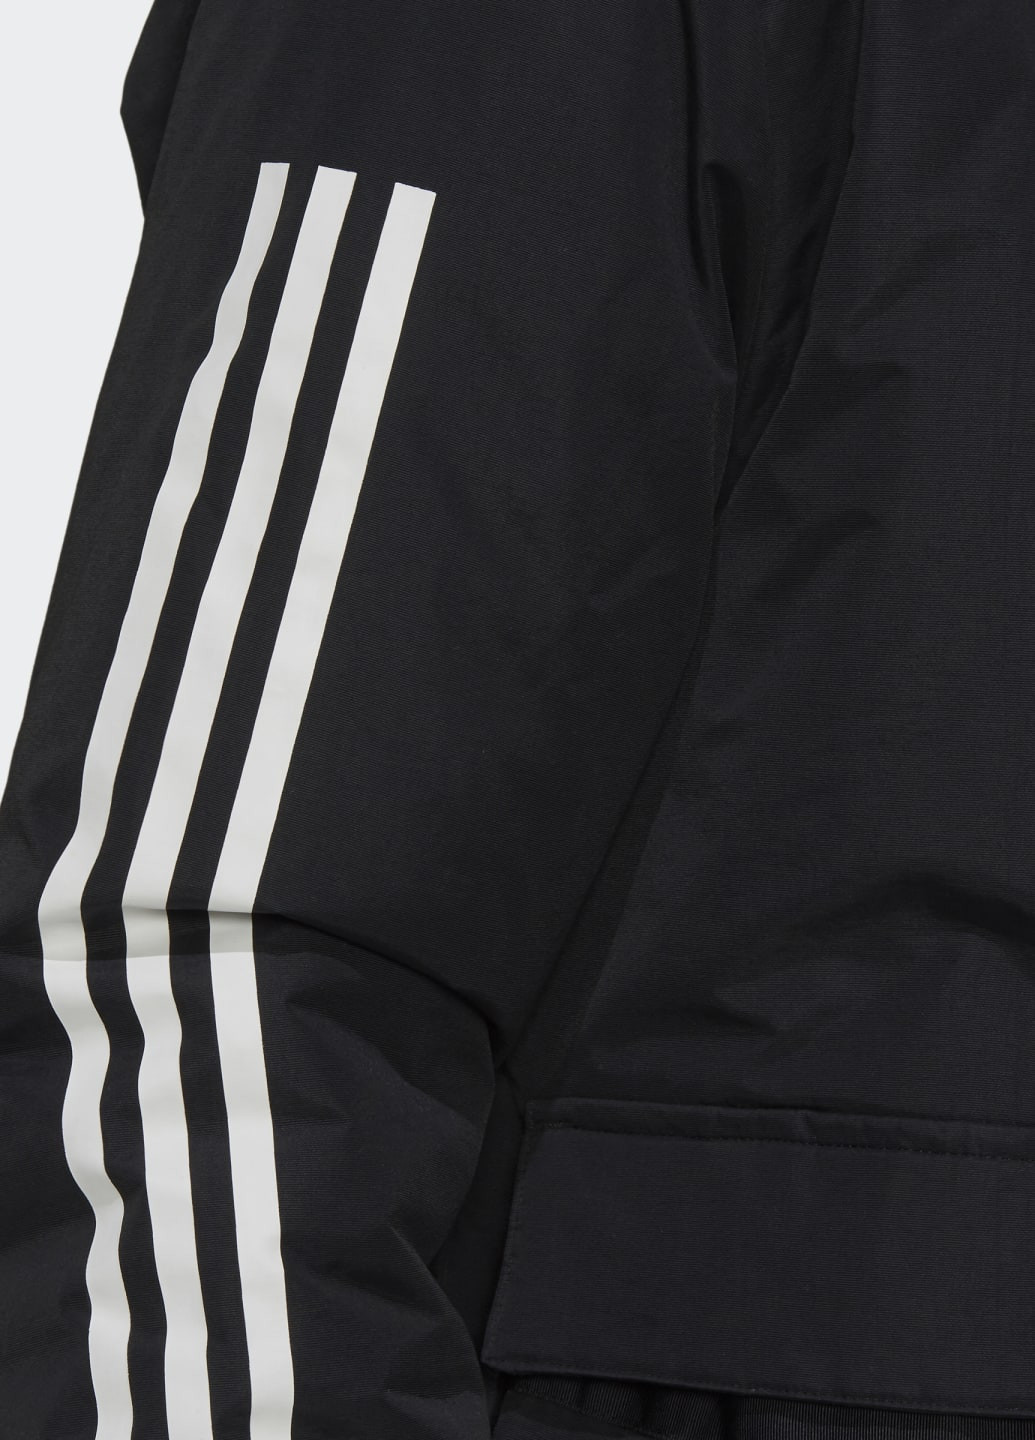 Черная летняя куртка с капюшоном utilitas 3-stripes (унисекс) adidas